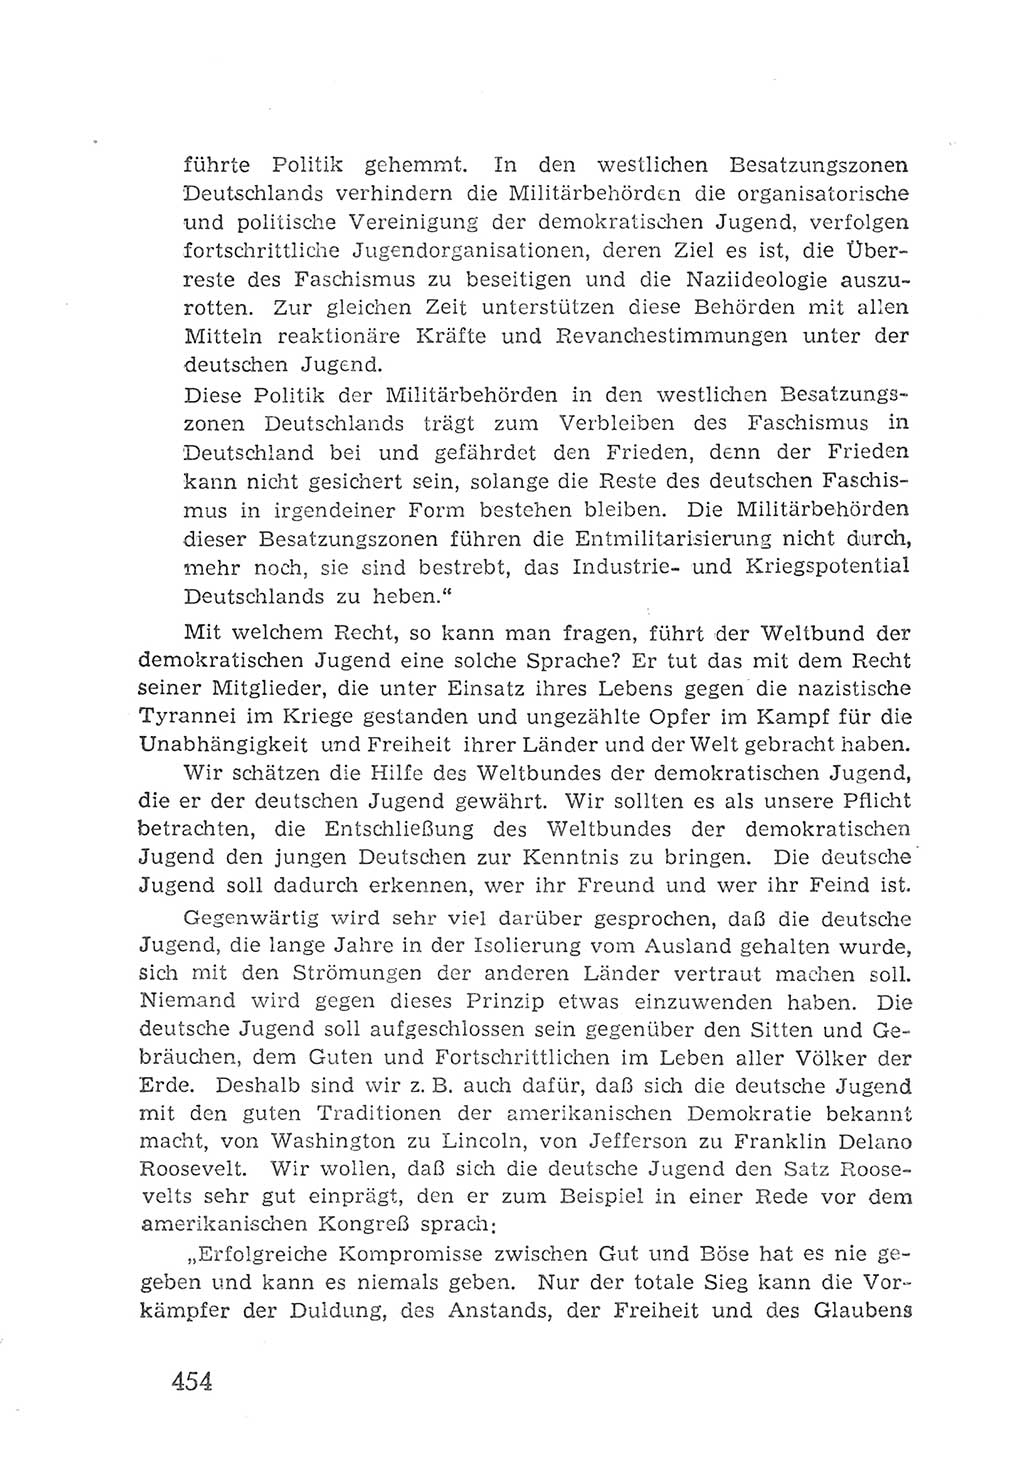 Protokoll der Verhandlungen des 2. Parteitages der Sozialistischen Einheitspartei Deutschlands (SED) [Sowjetische Besatzungszone (SBZ) Deutschlands] 1947, Seite 454 (Prot. Verh. 2. PT SED SBZ Dtl. 1947, S. 454)